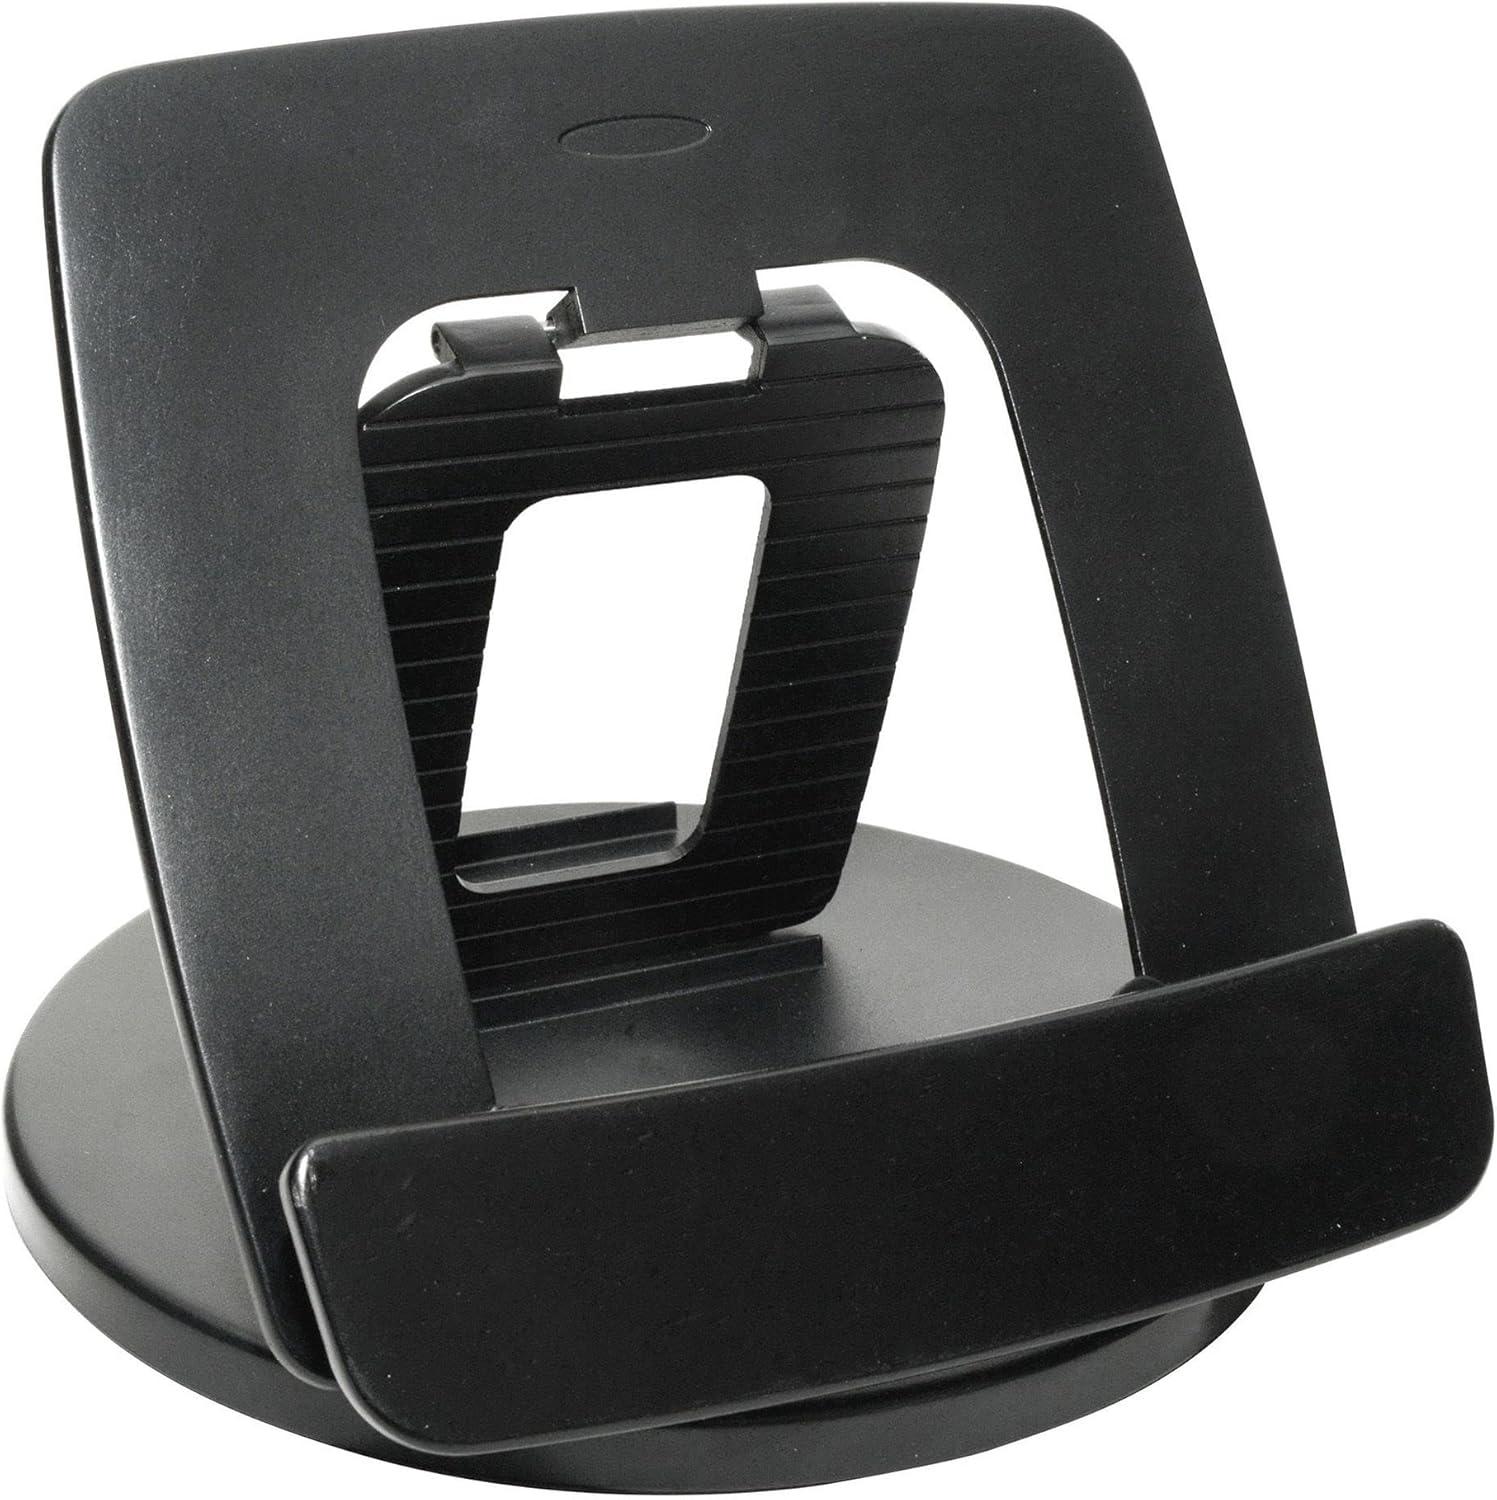 360° Rotating Foldable Black Desktop Tablet Stand